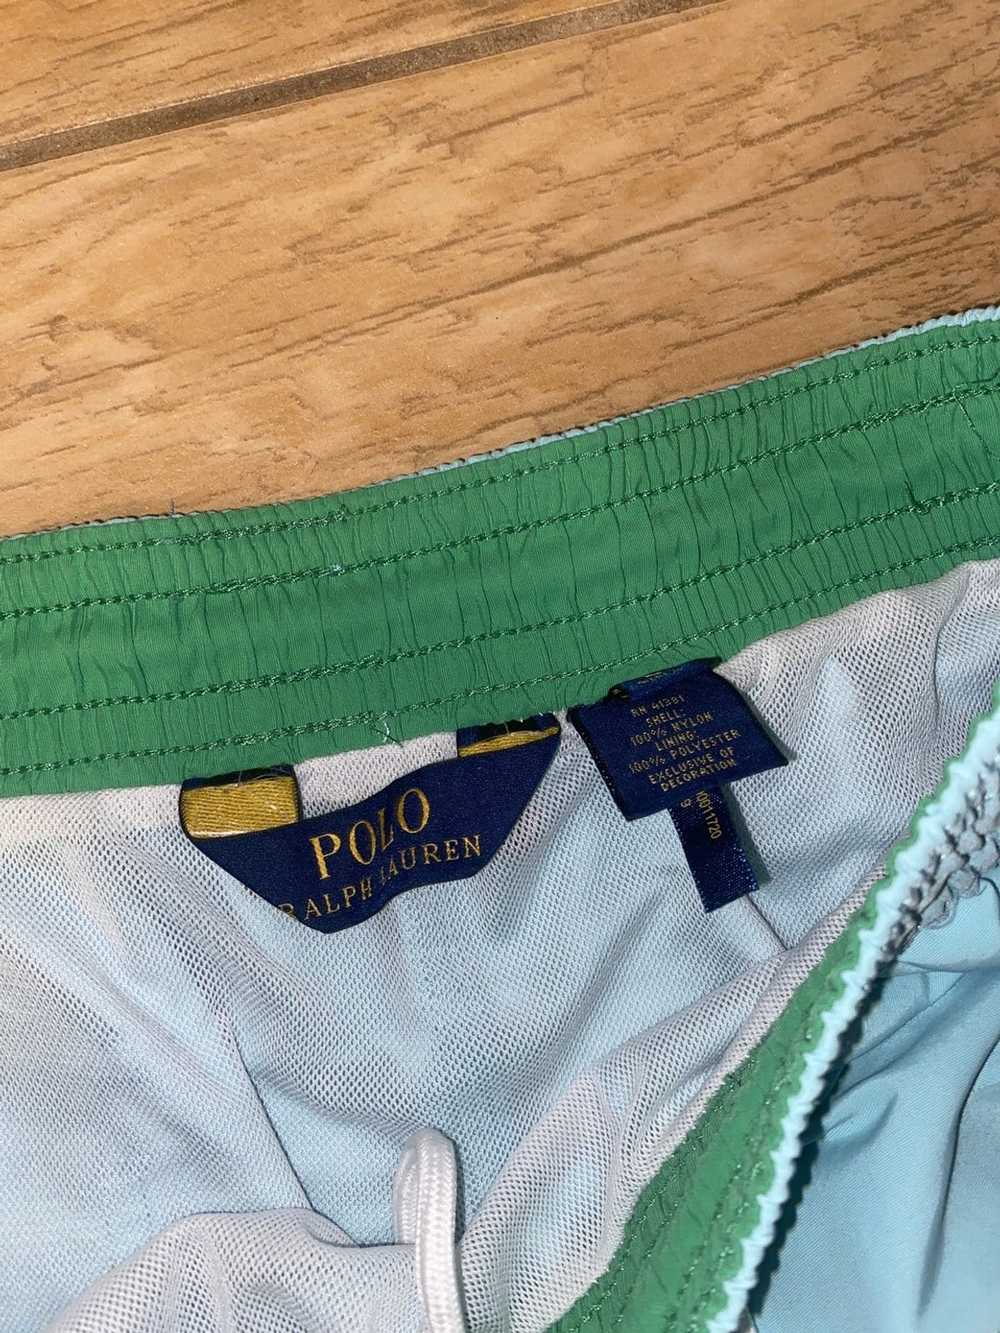 Polo Ralph Lauren Ralph Lauren bathing suit - image 3